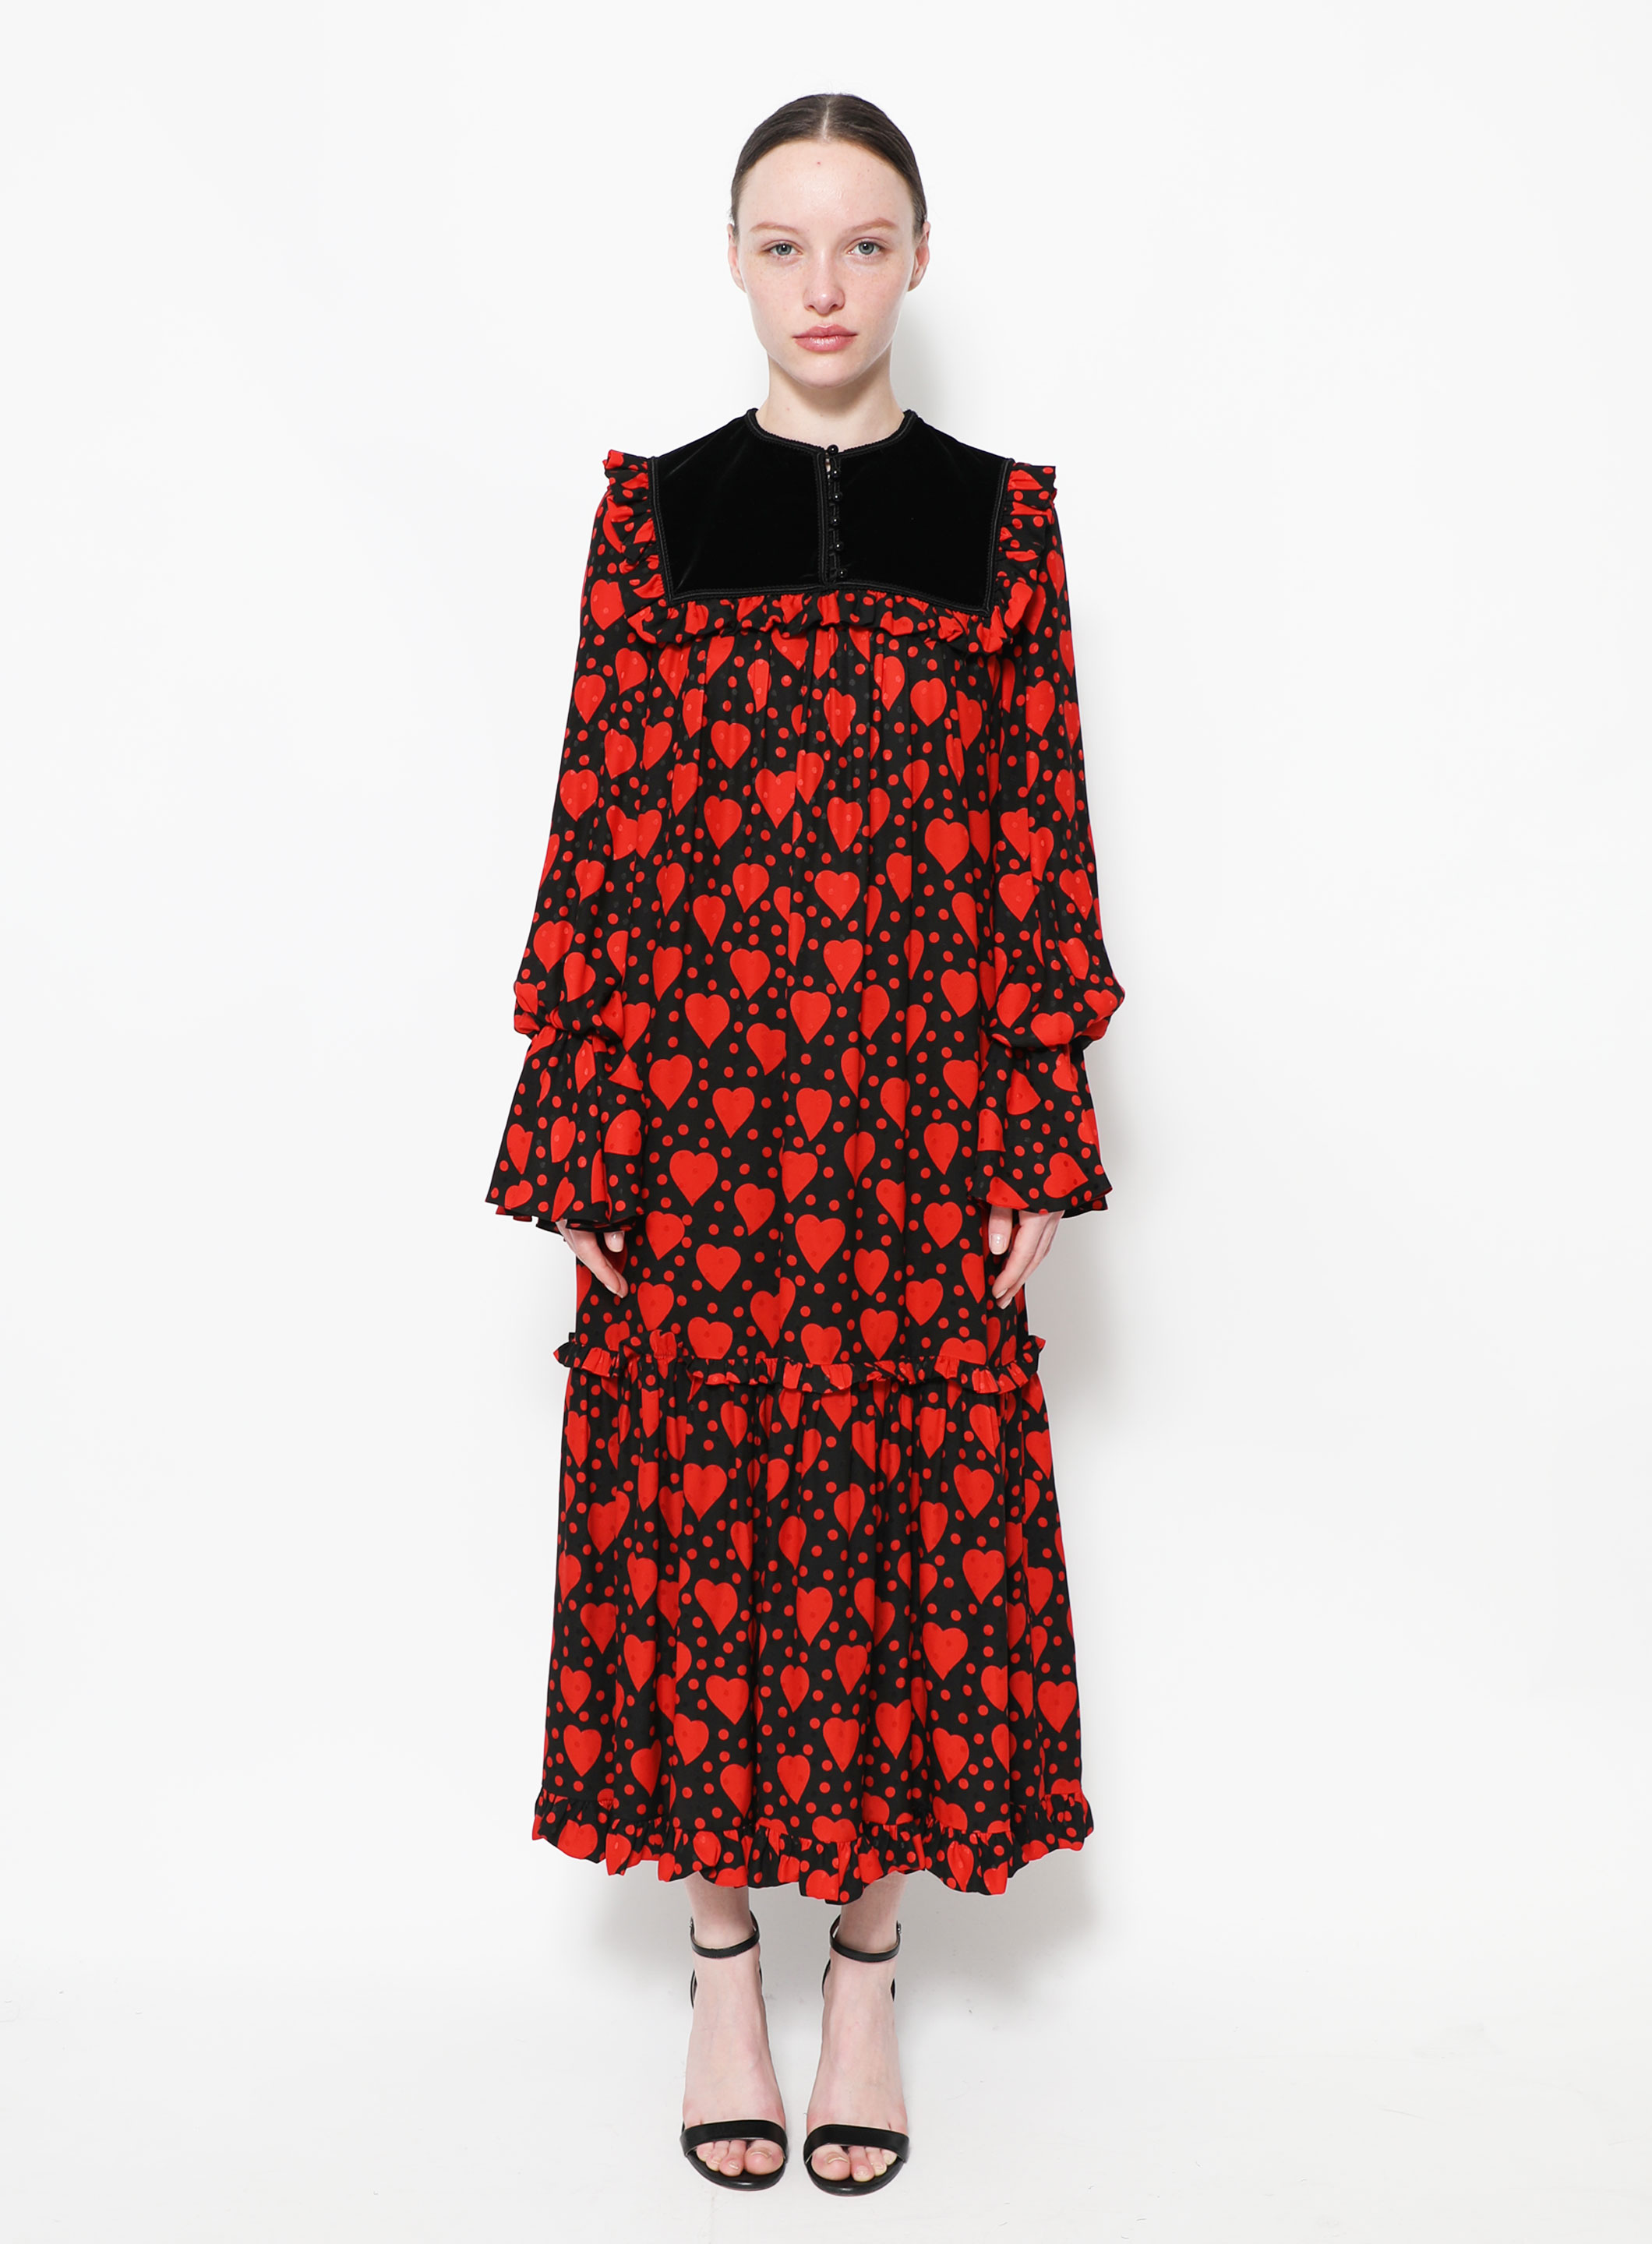 Vinyl Bust Tweed Dress - Women - Ready-to-Wear